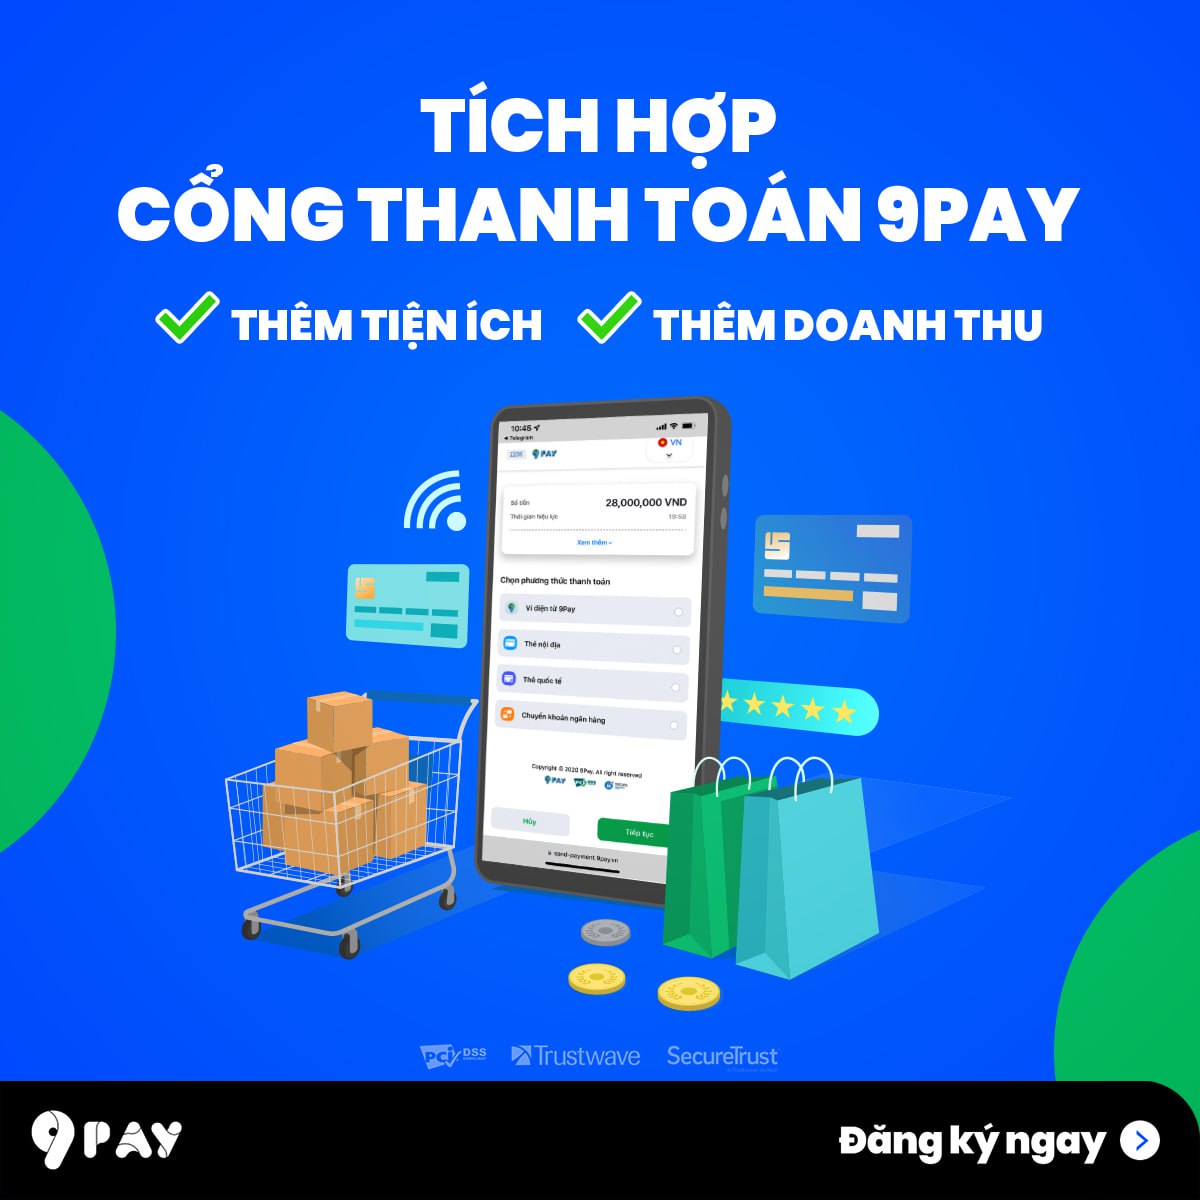 zAY-9pay-tich-hop-nhieu-phuong-thuc-va-tinh-nang-moi-tren-cong-thanh-toan